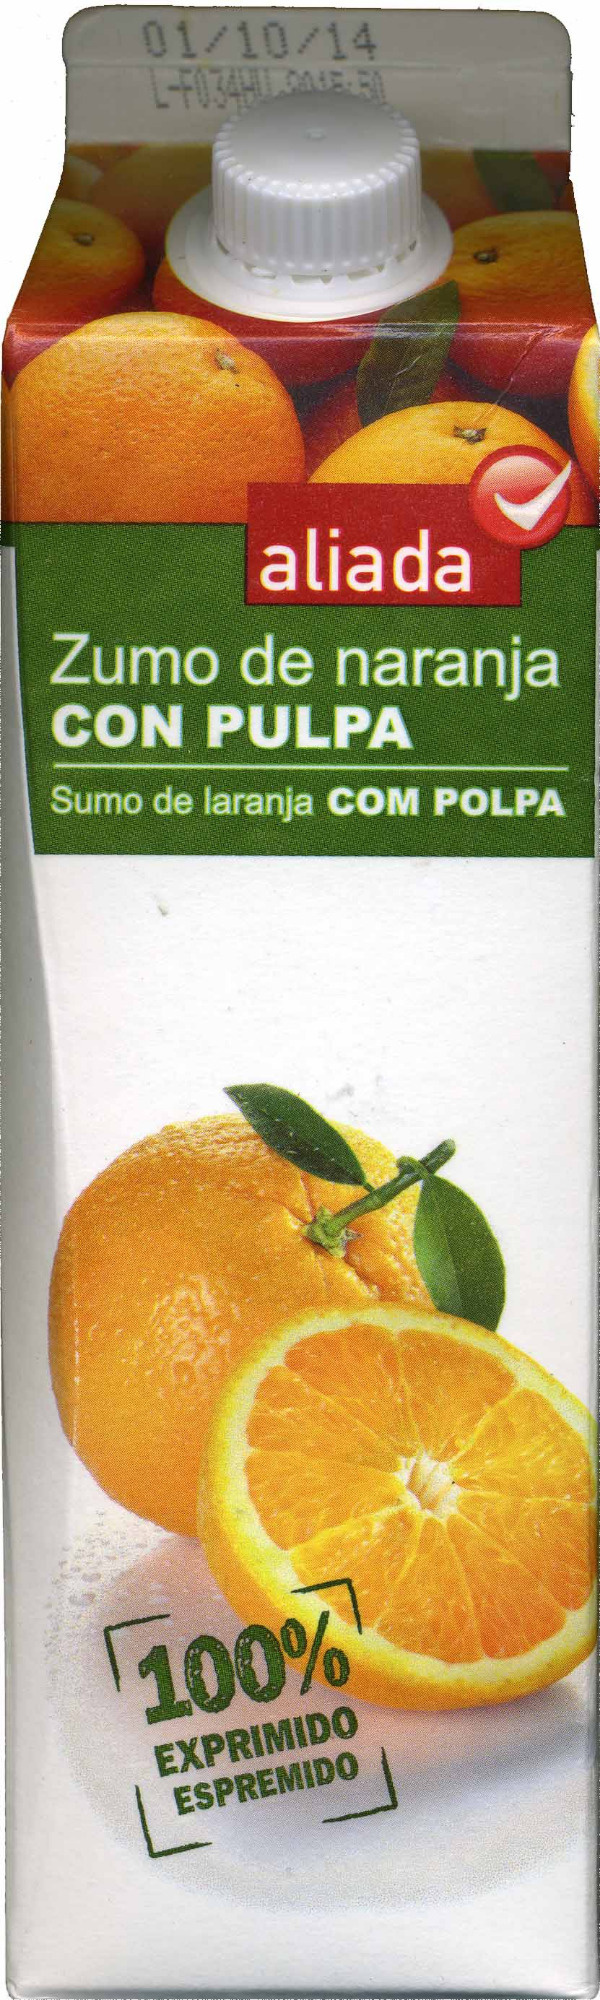 Zumo de naranja exprimida refrigerado con pulpa "Aliada" - Product - es